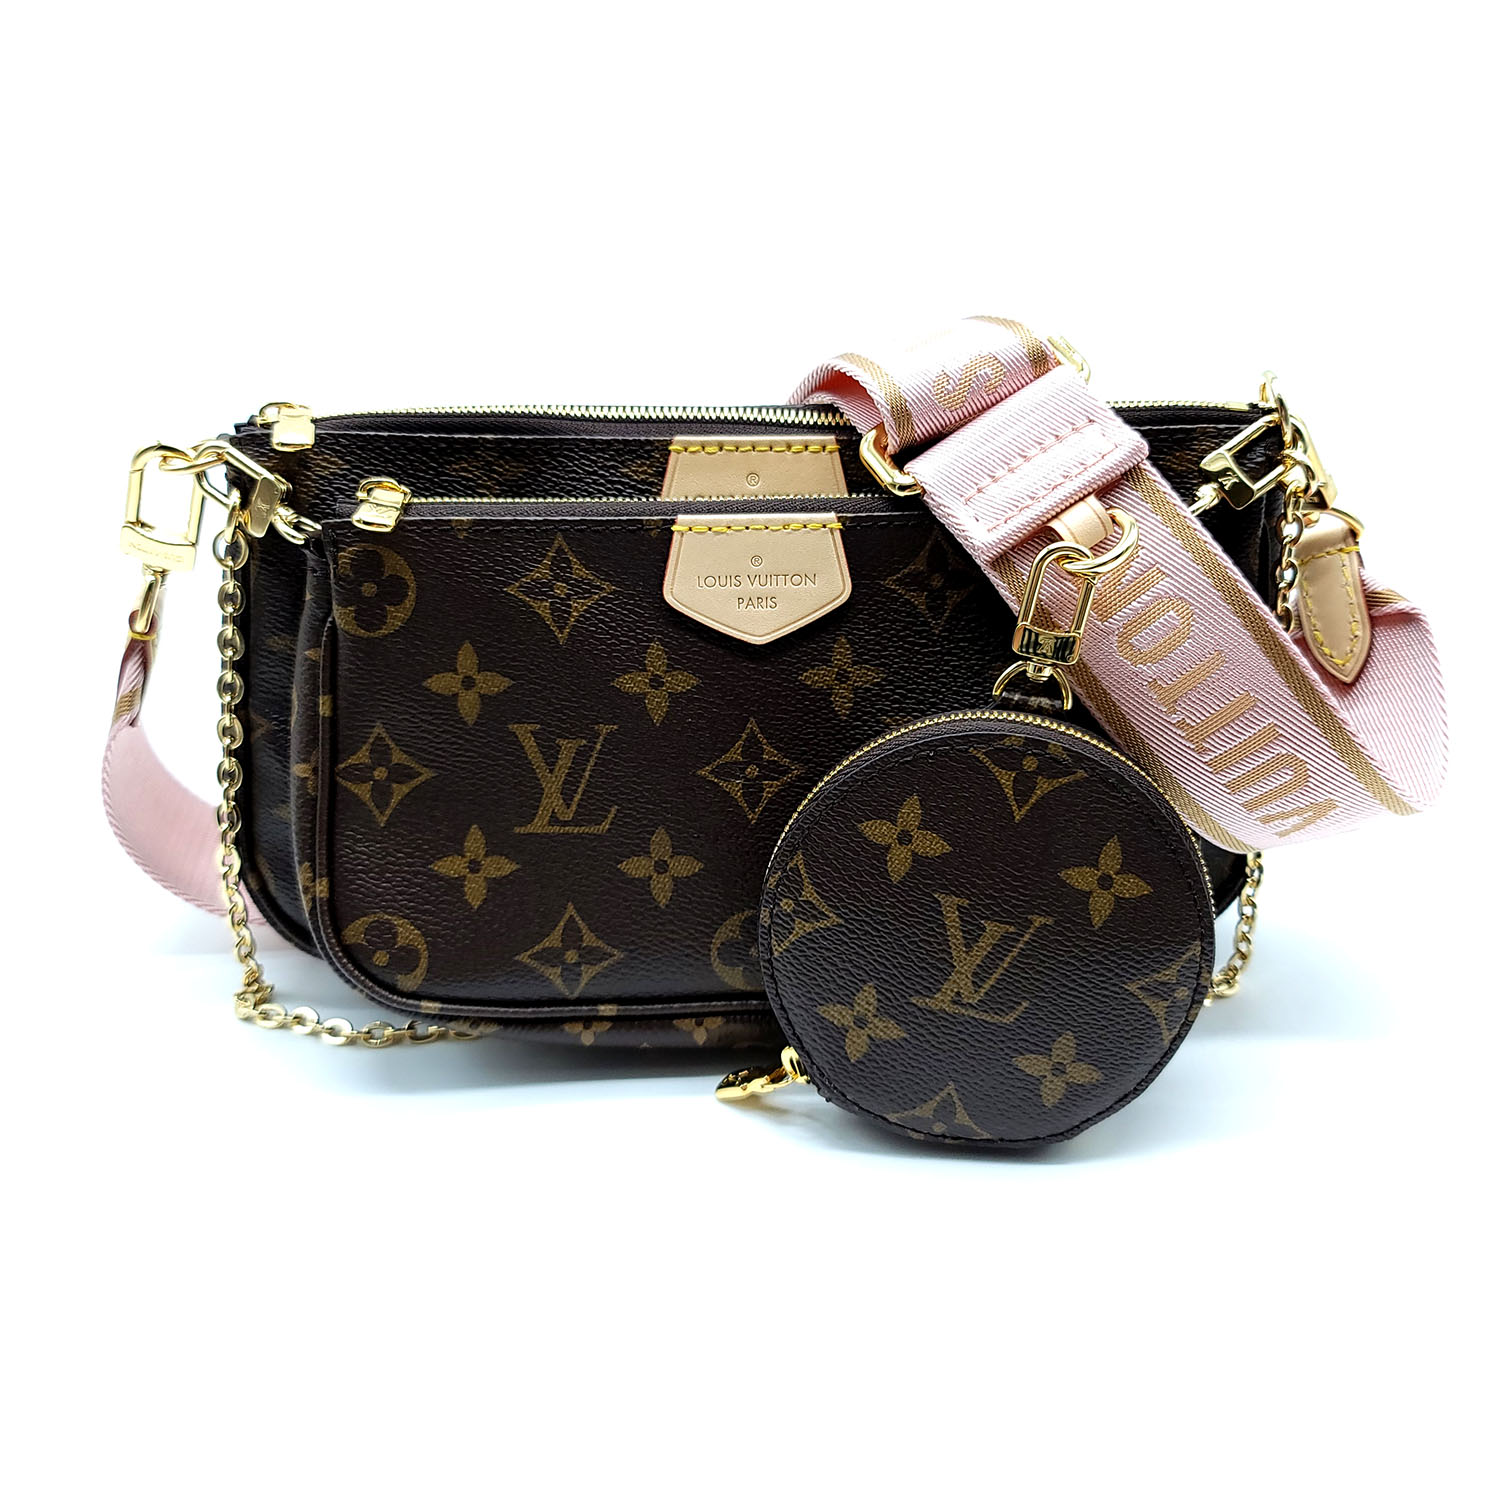 WHY I'M SELLING ⛔ Louis Vuitton Multi Pochette Accessoires Bag